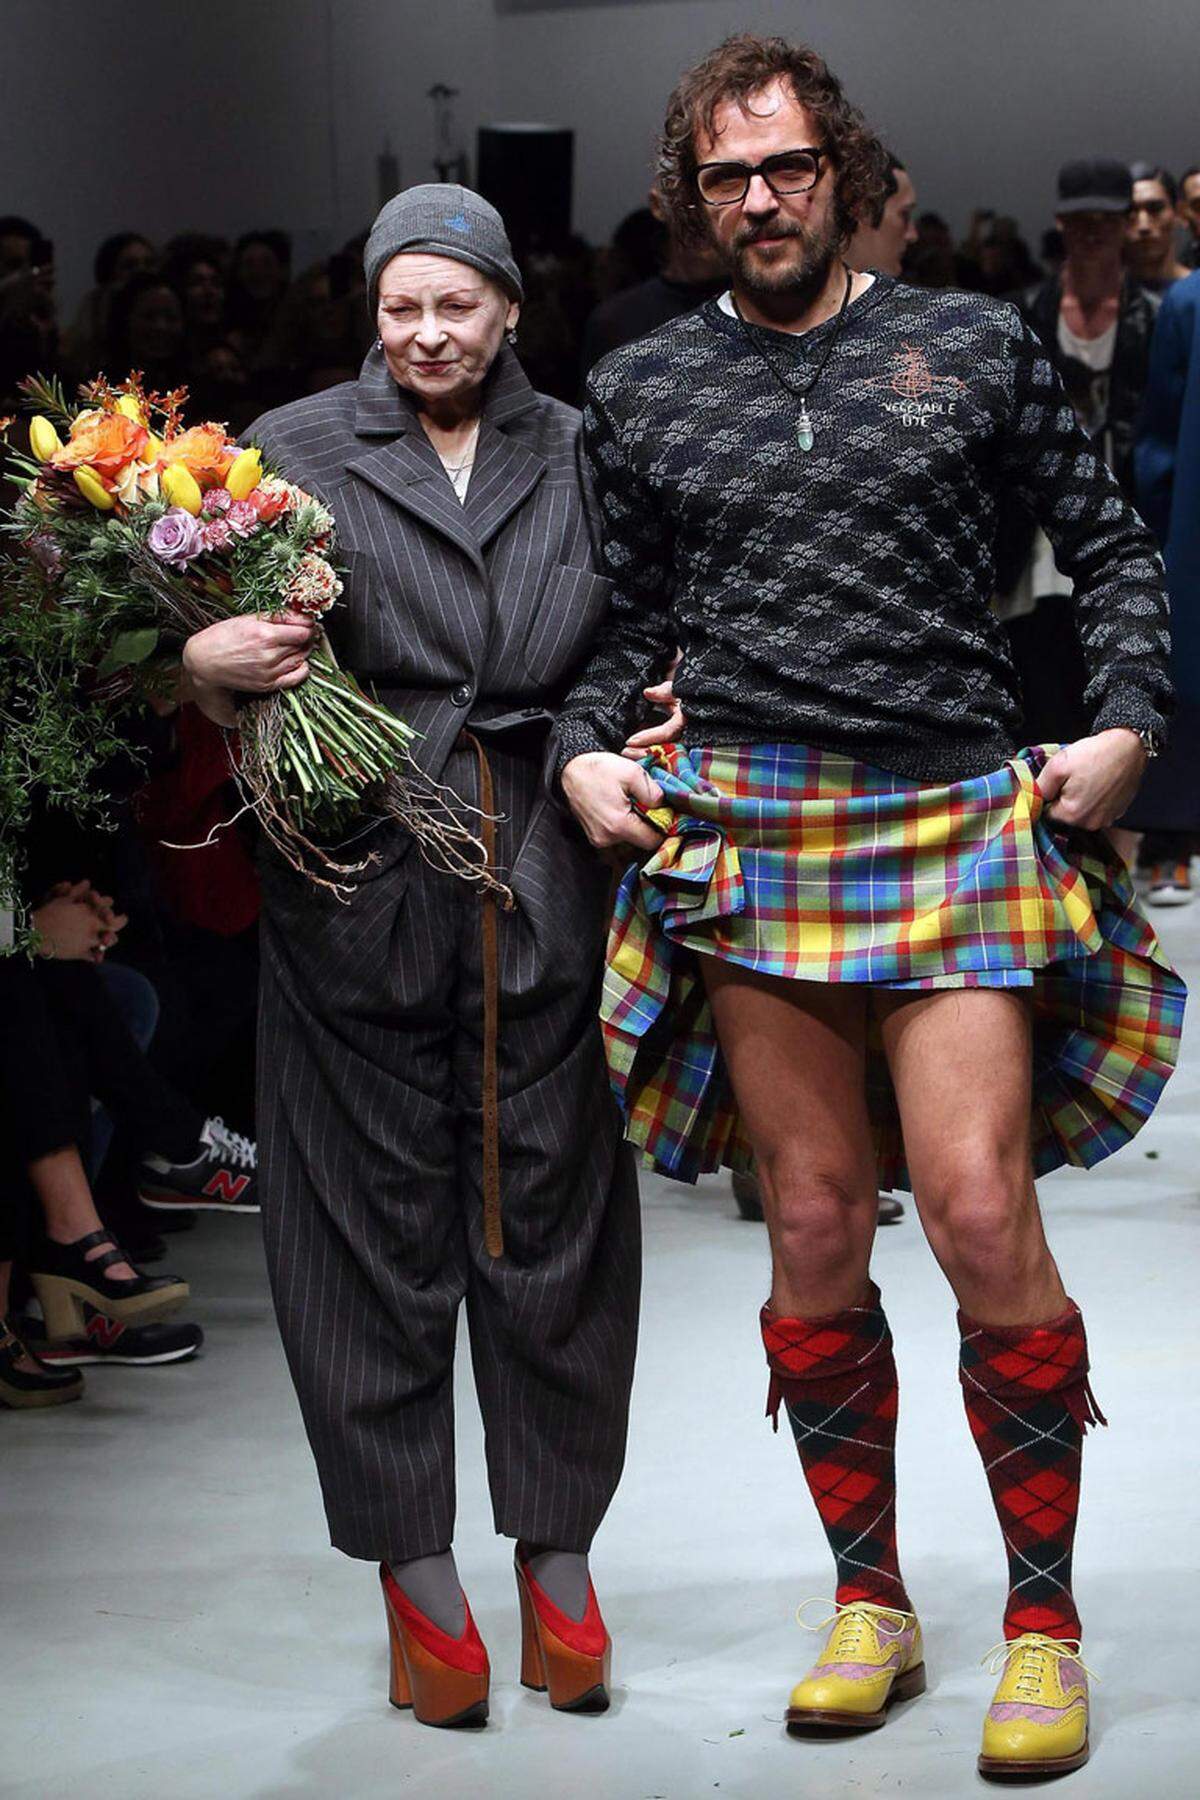 Neben der klassischen Form des Sugardaddys, trifft man aber auch vermehrt auf Sugarmamas. Ein bekanntes Paar ist die High Fashion-Designern Vivienne Westwood und ihr österreichischer Ehemann Andreas Kronthaler. Sie ist 23 Jahre älter als er.